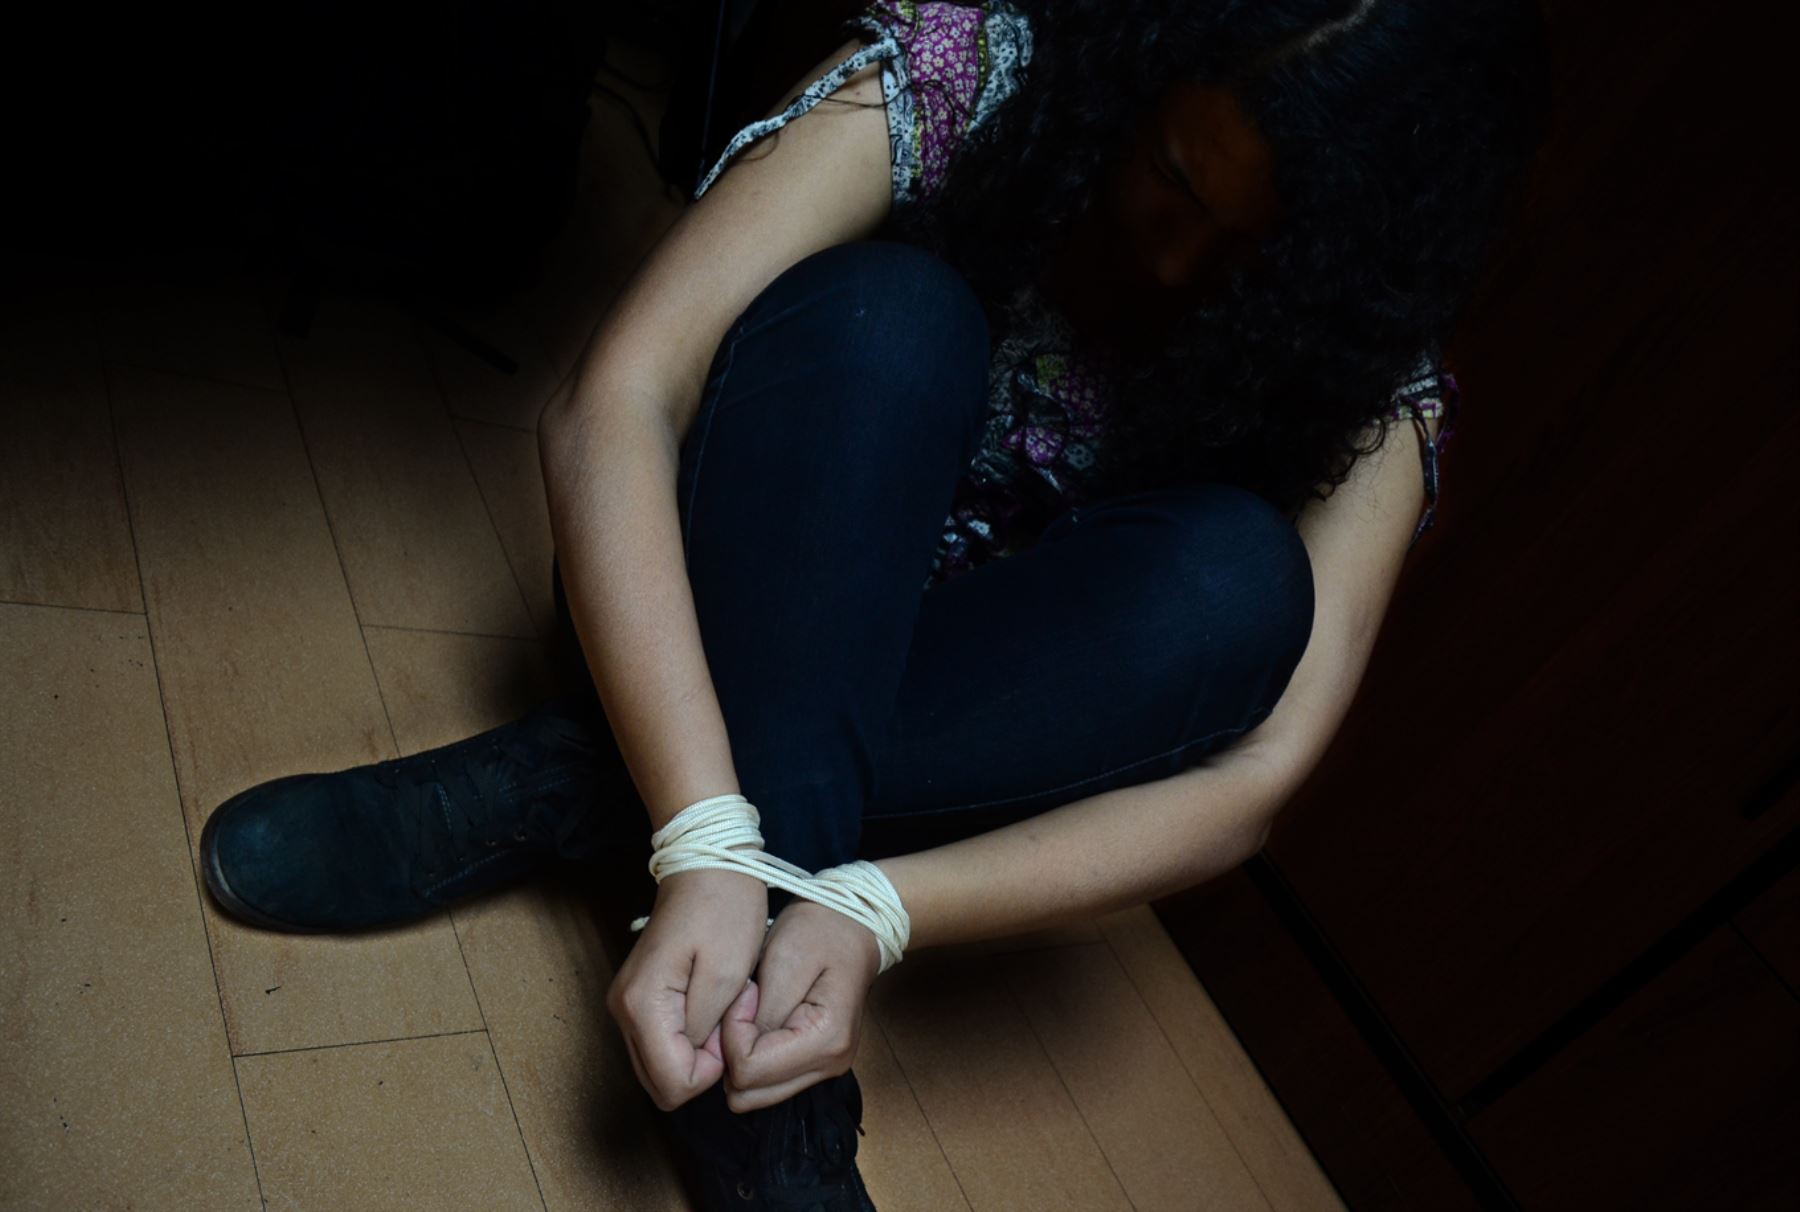 Costa Rica registra dos casos de trata de personas por mes en los últimos 8 años